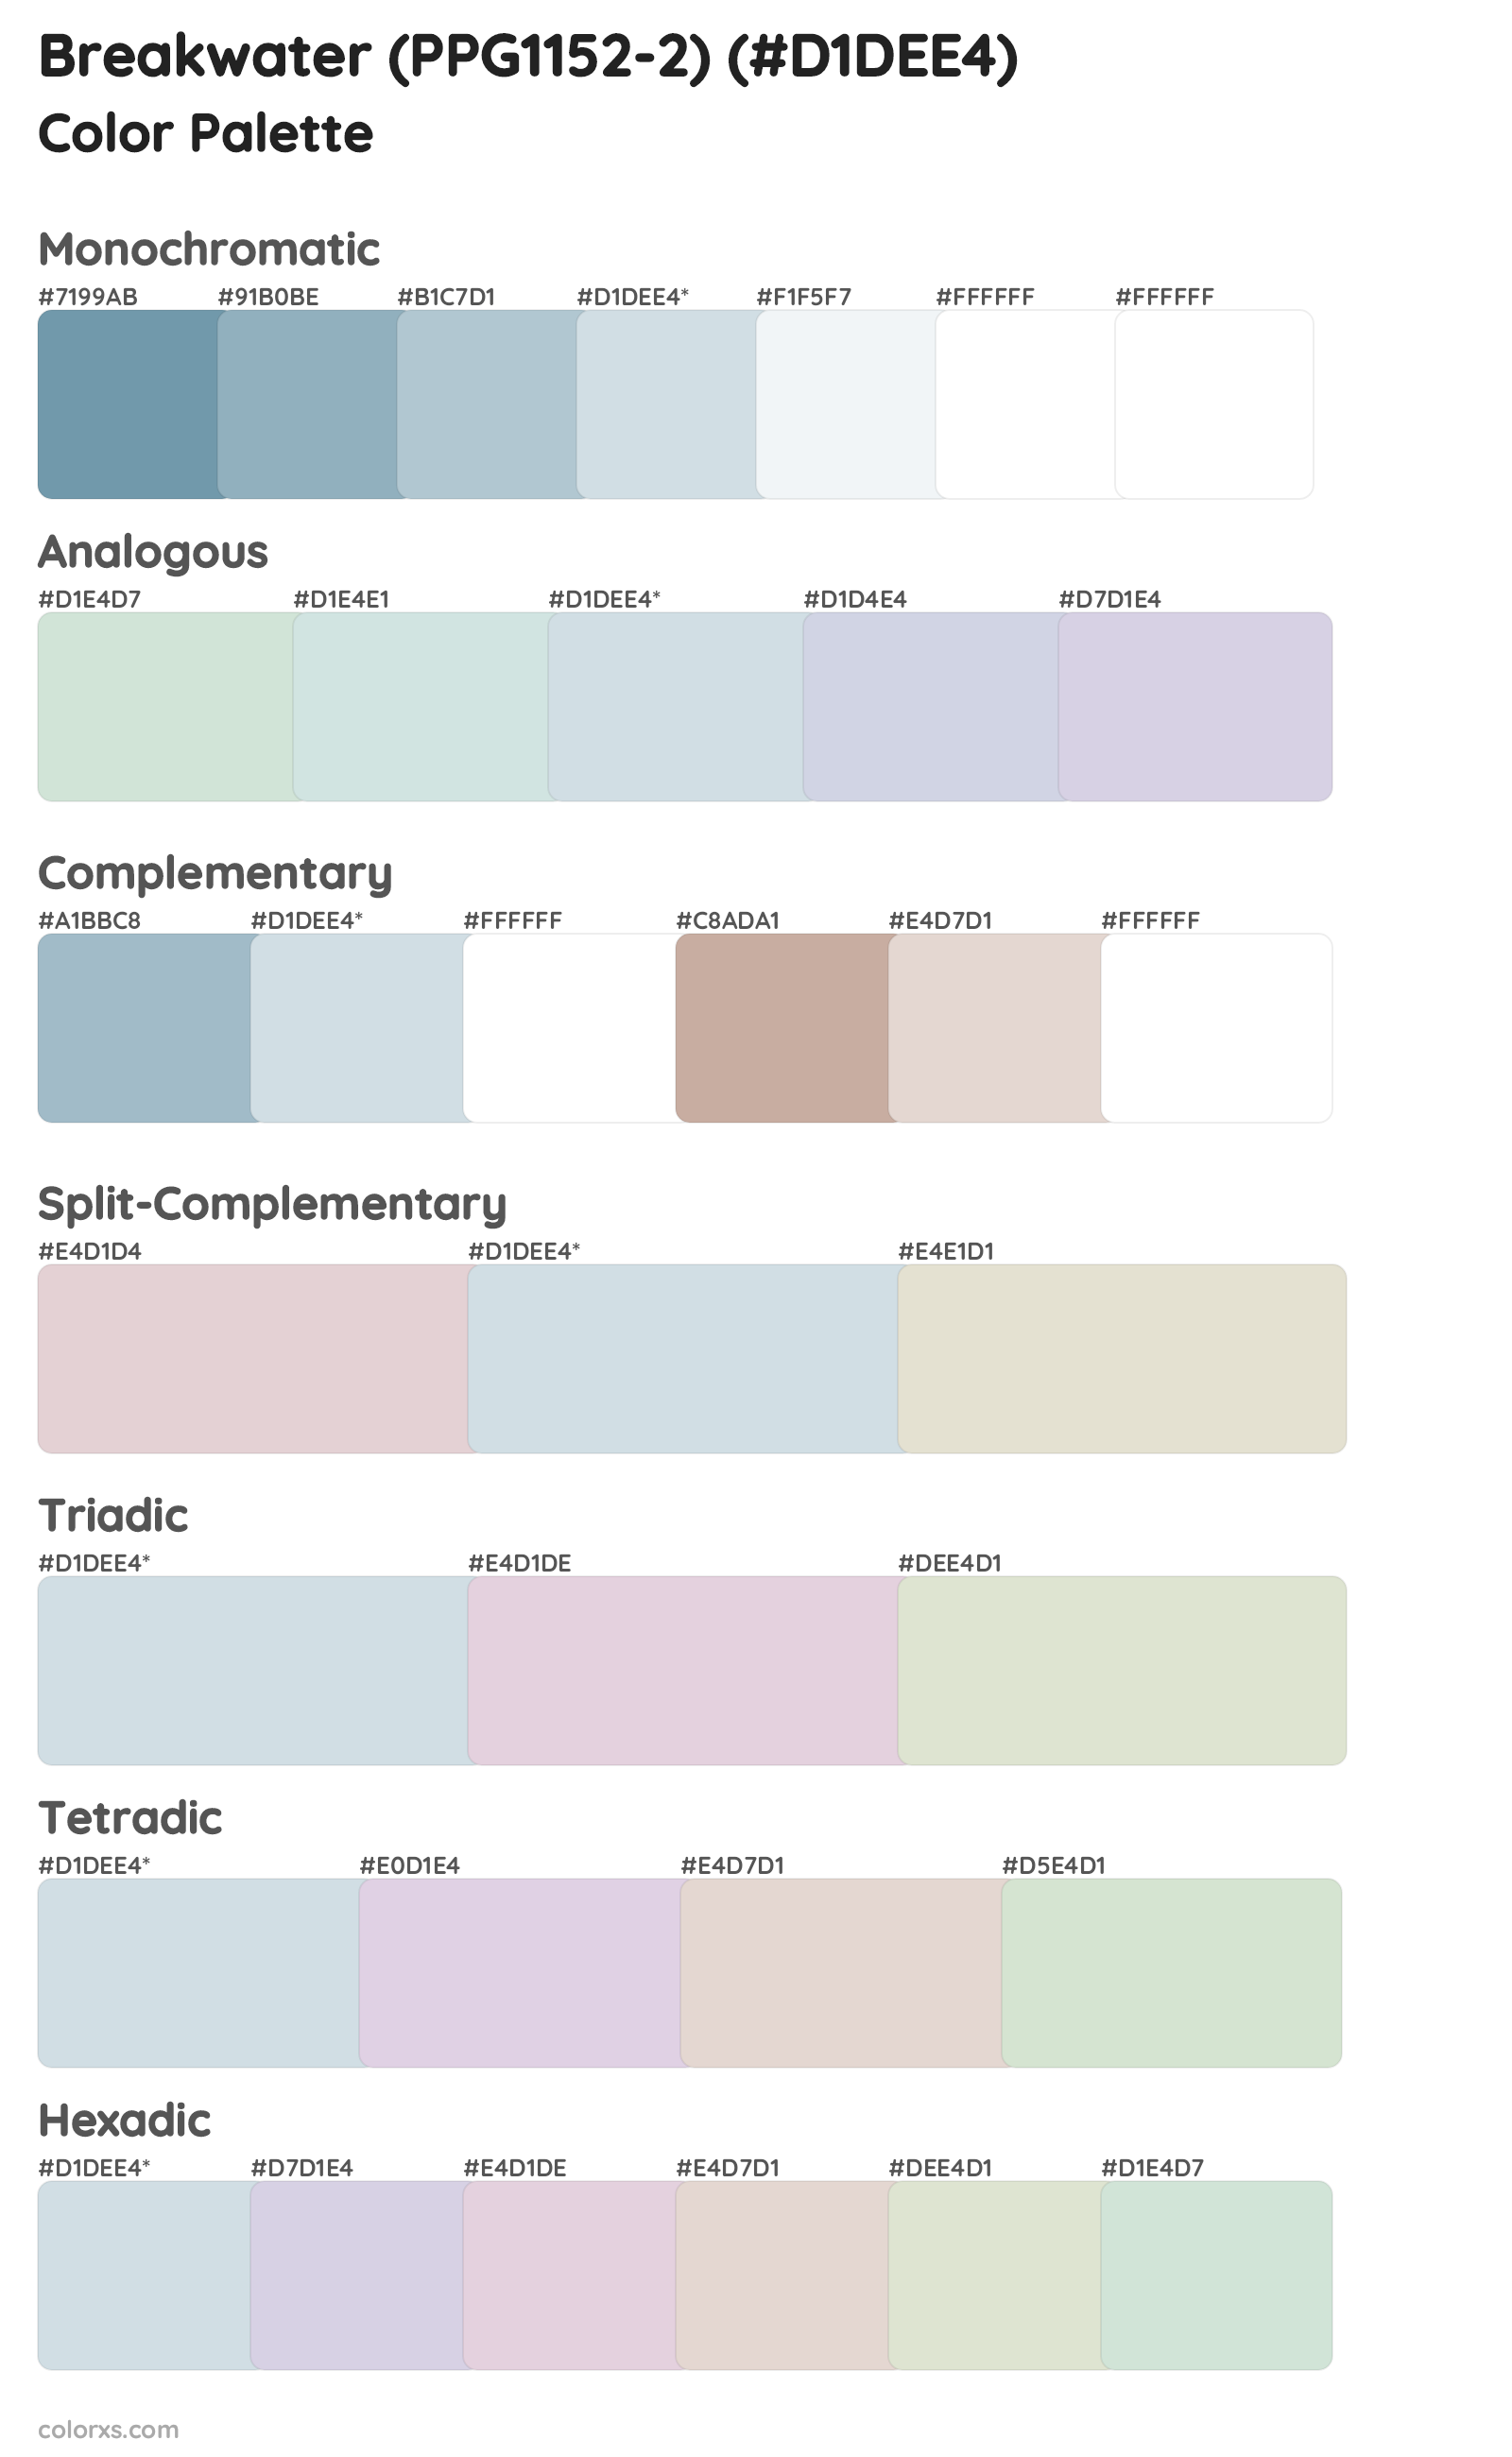 Breakwater (PPG1152-2) Color Scheme Palettes